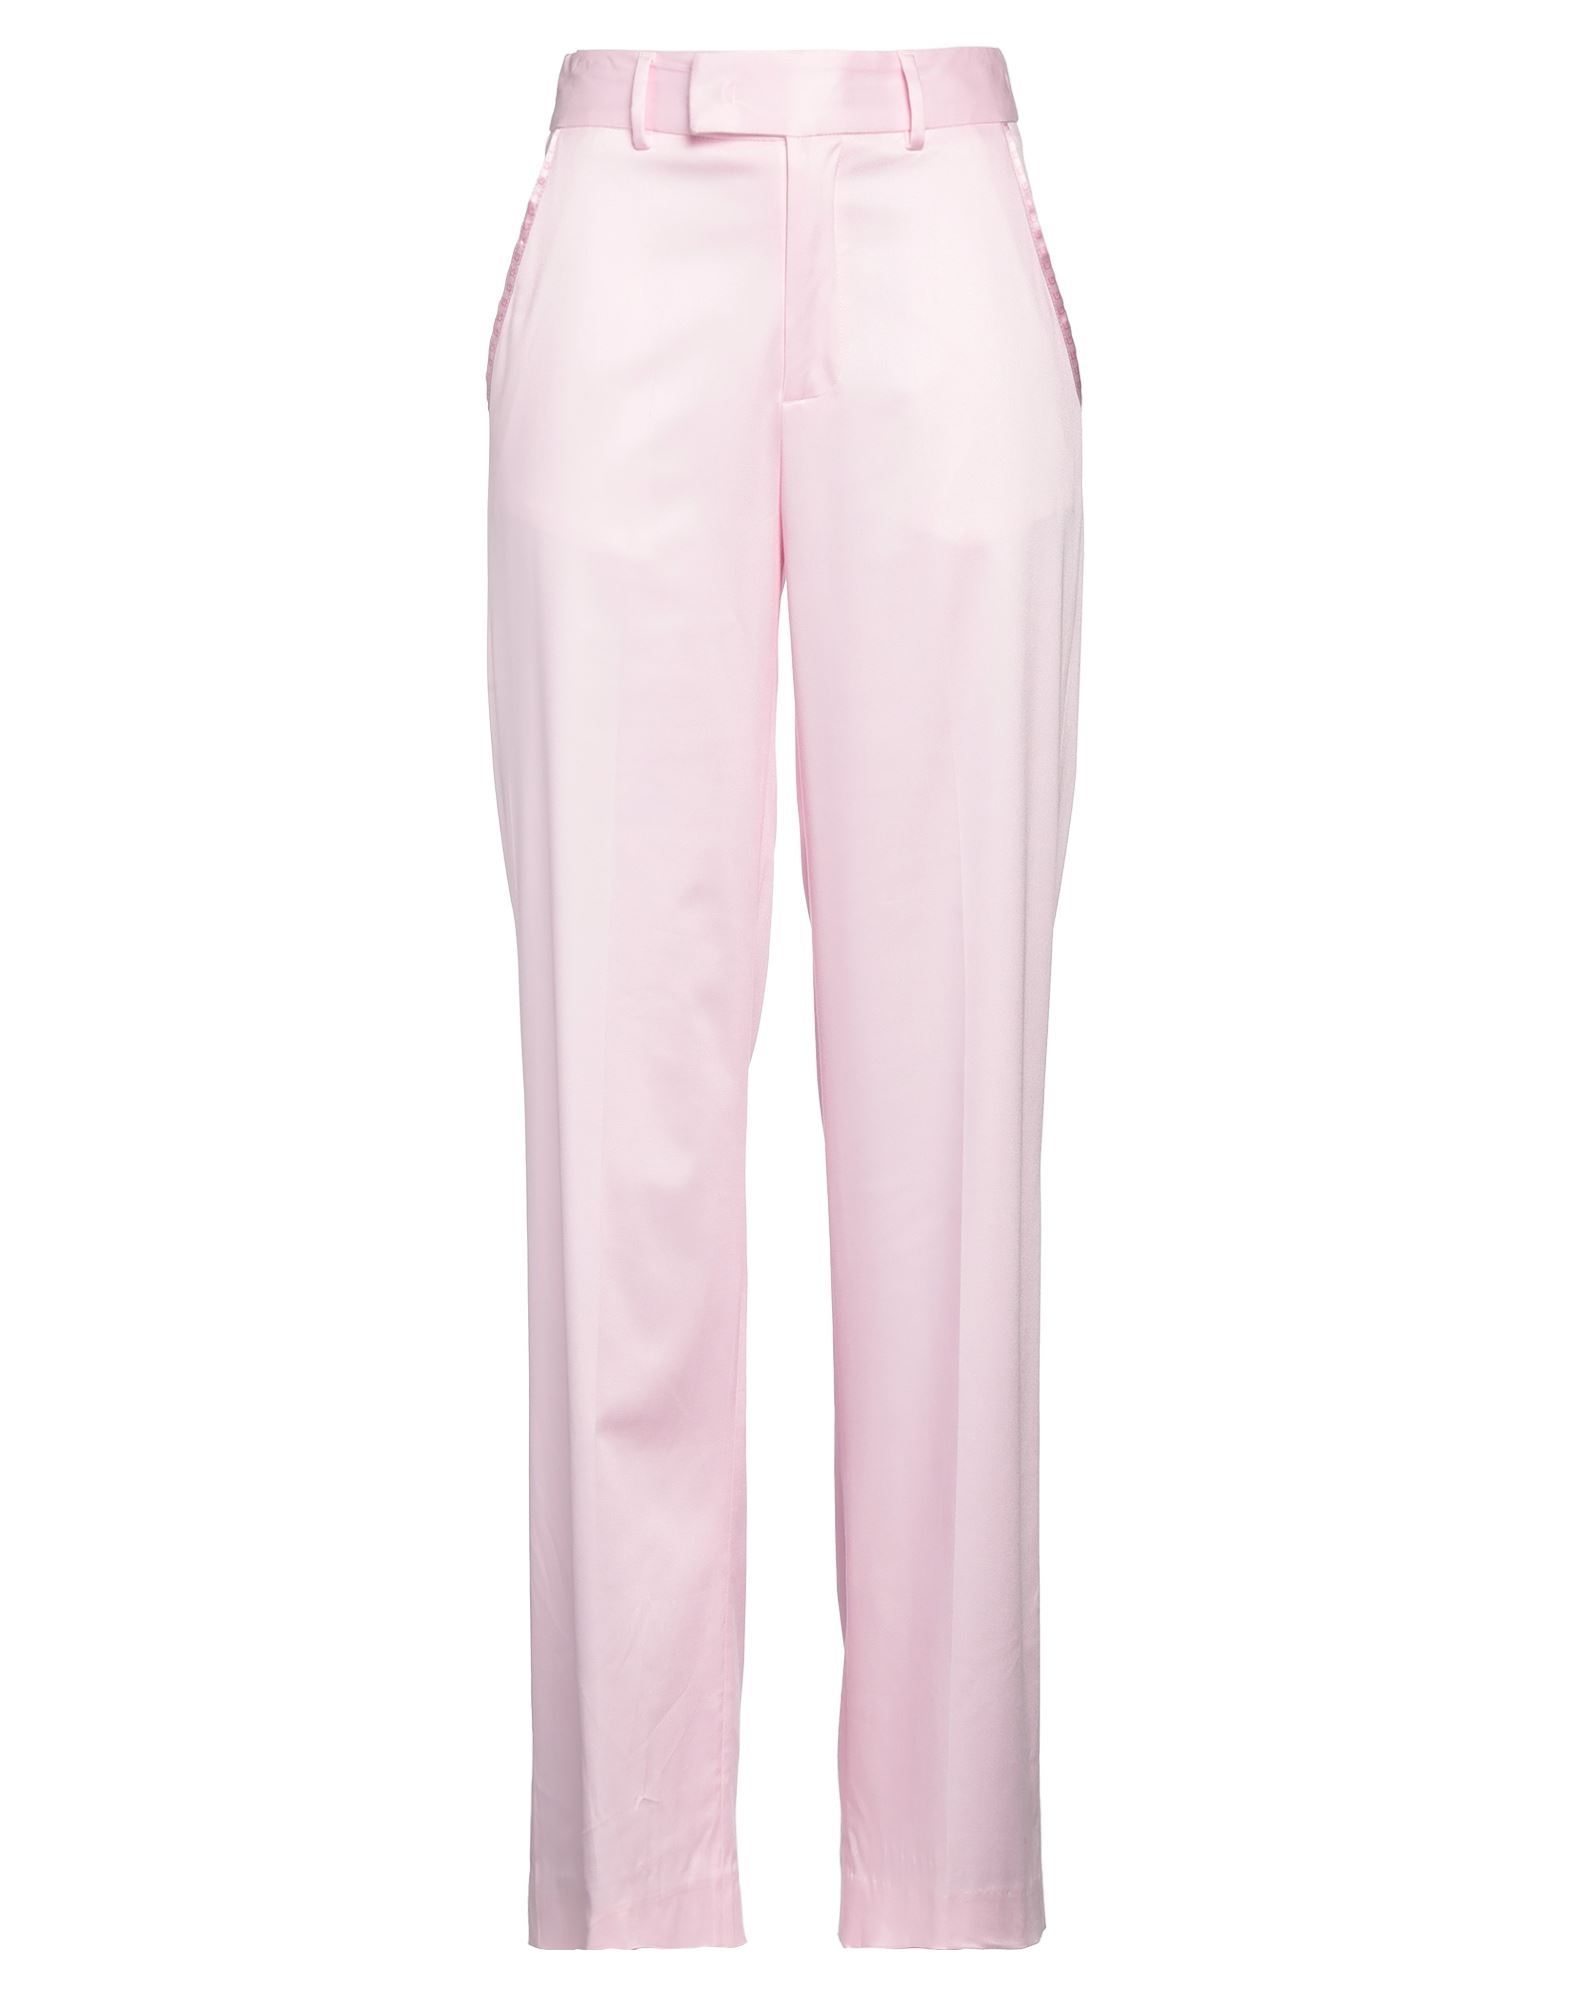 Gaelle Paris Pants In Pink